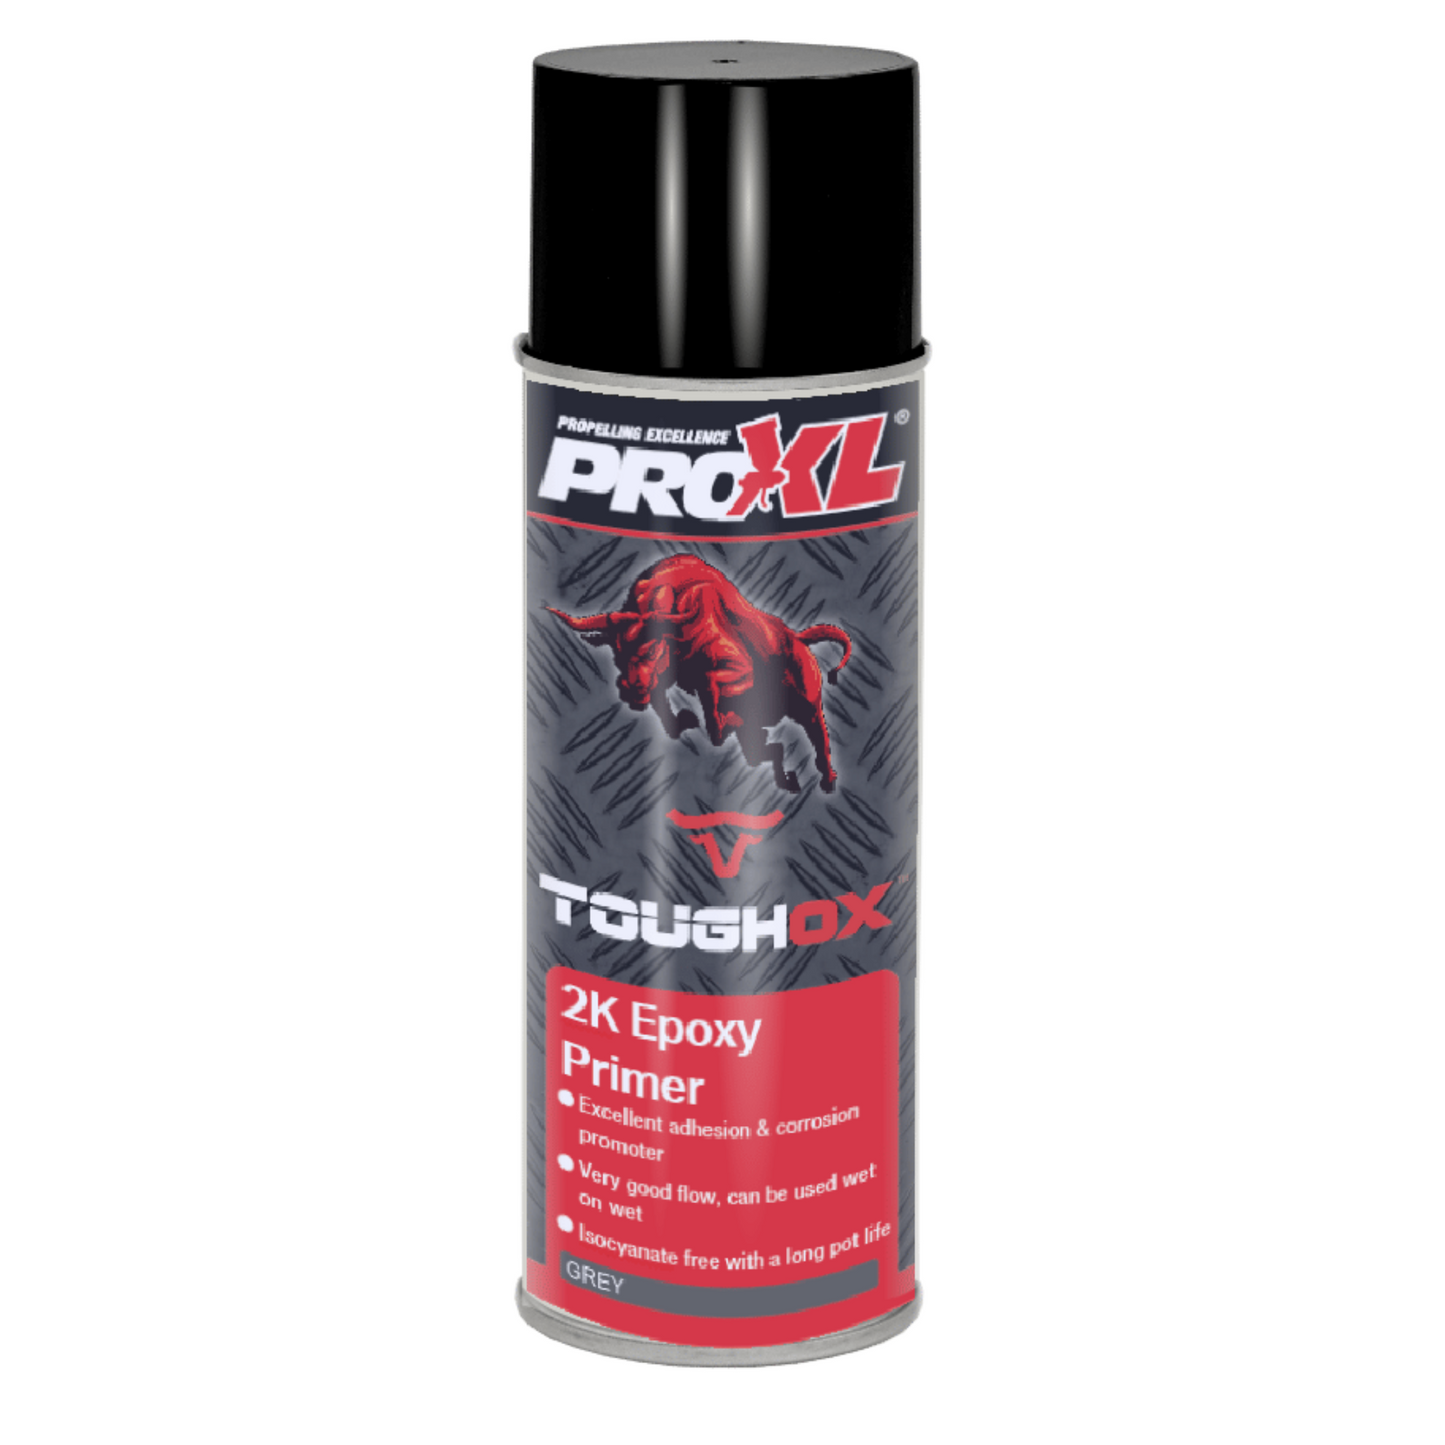 ToughOx 2K epoxy primer